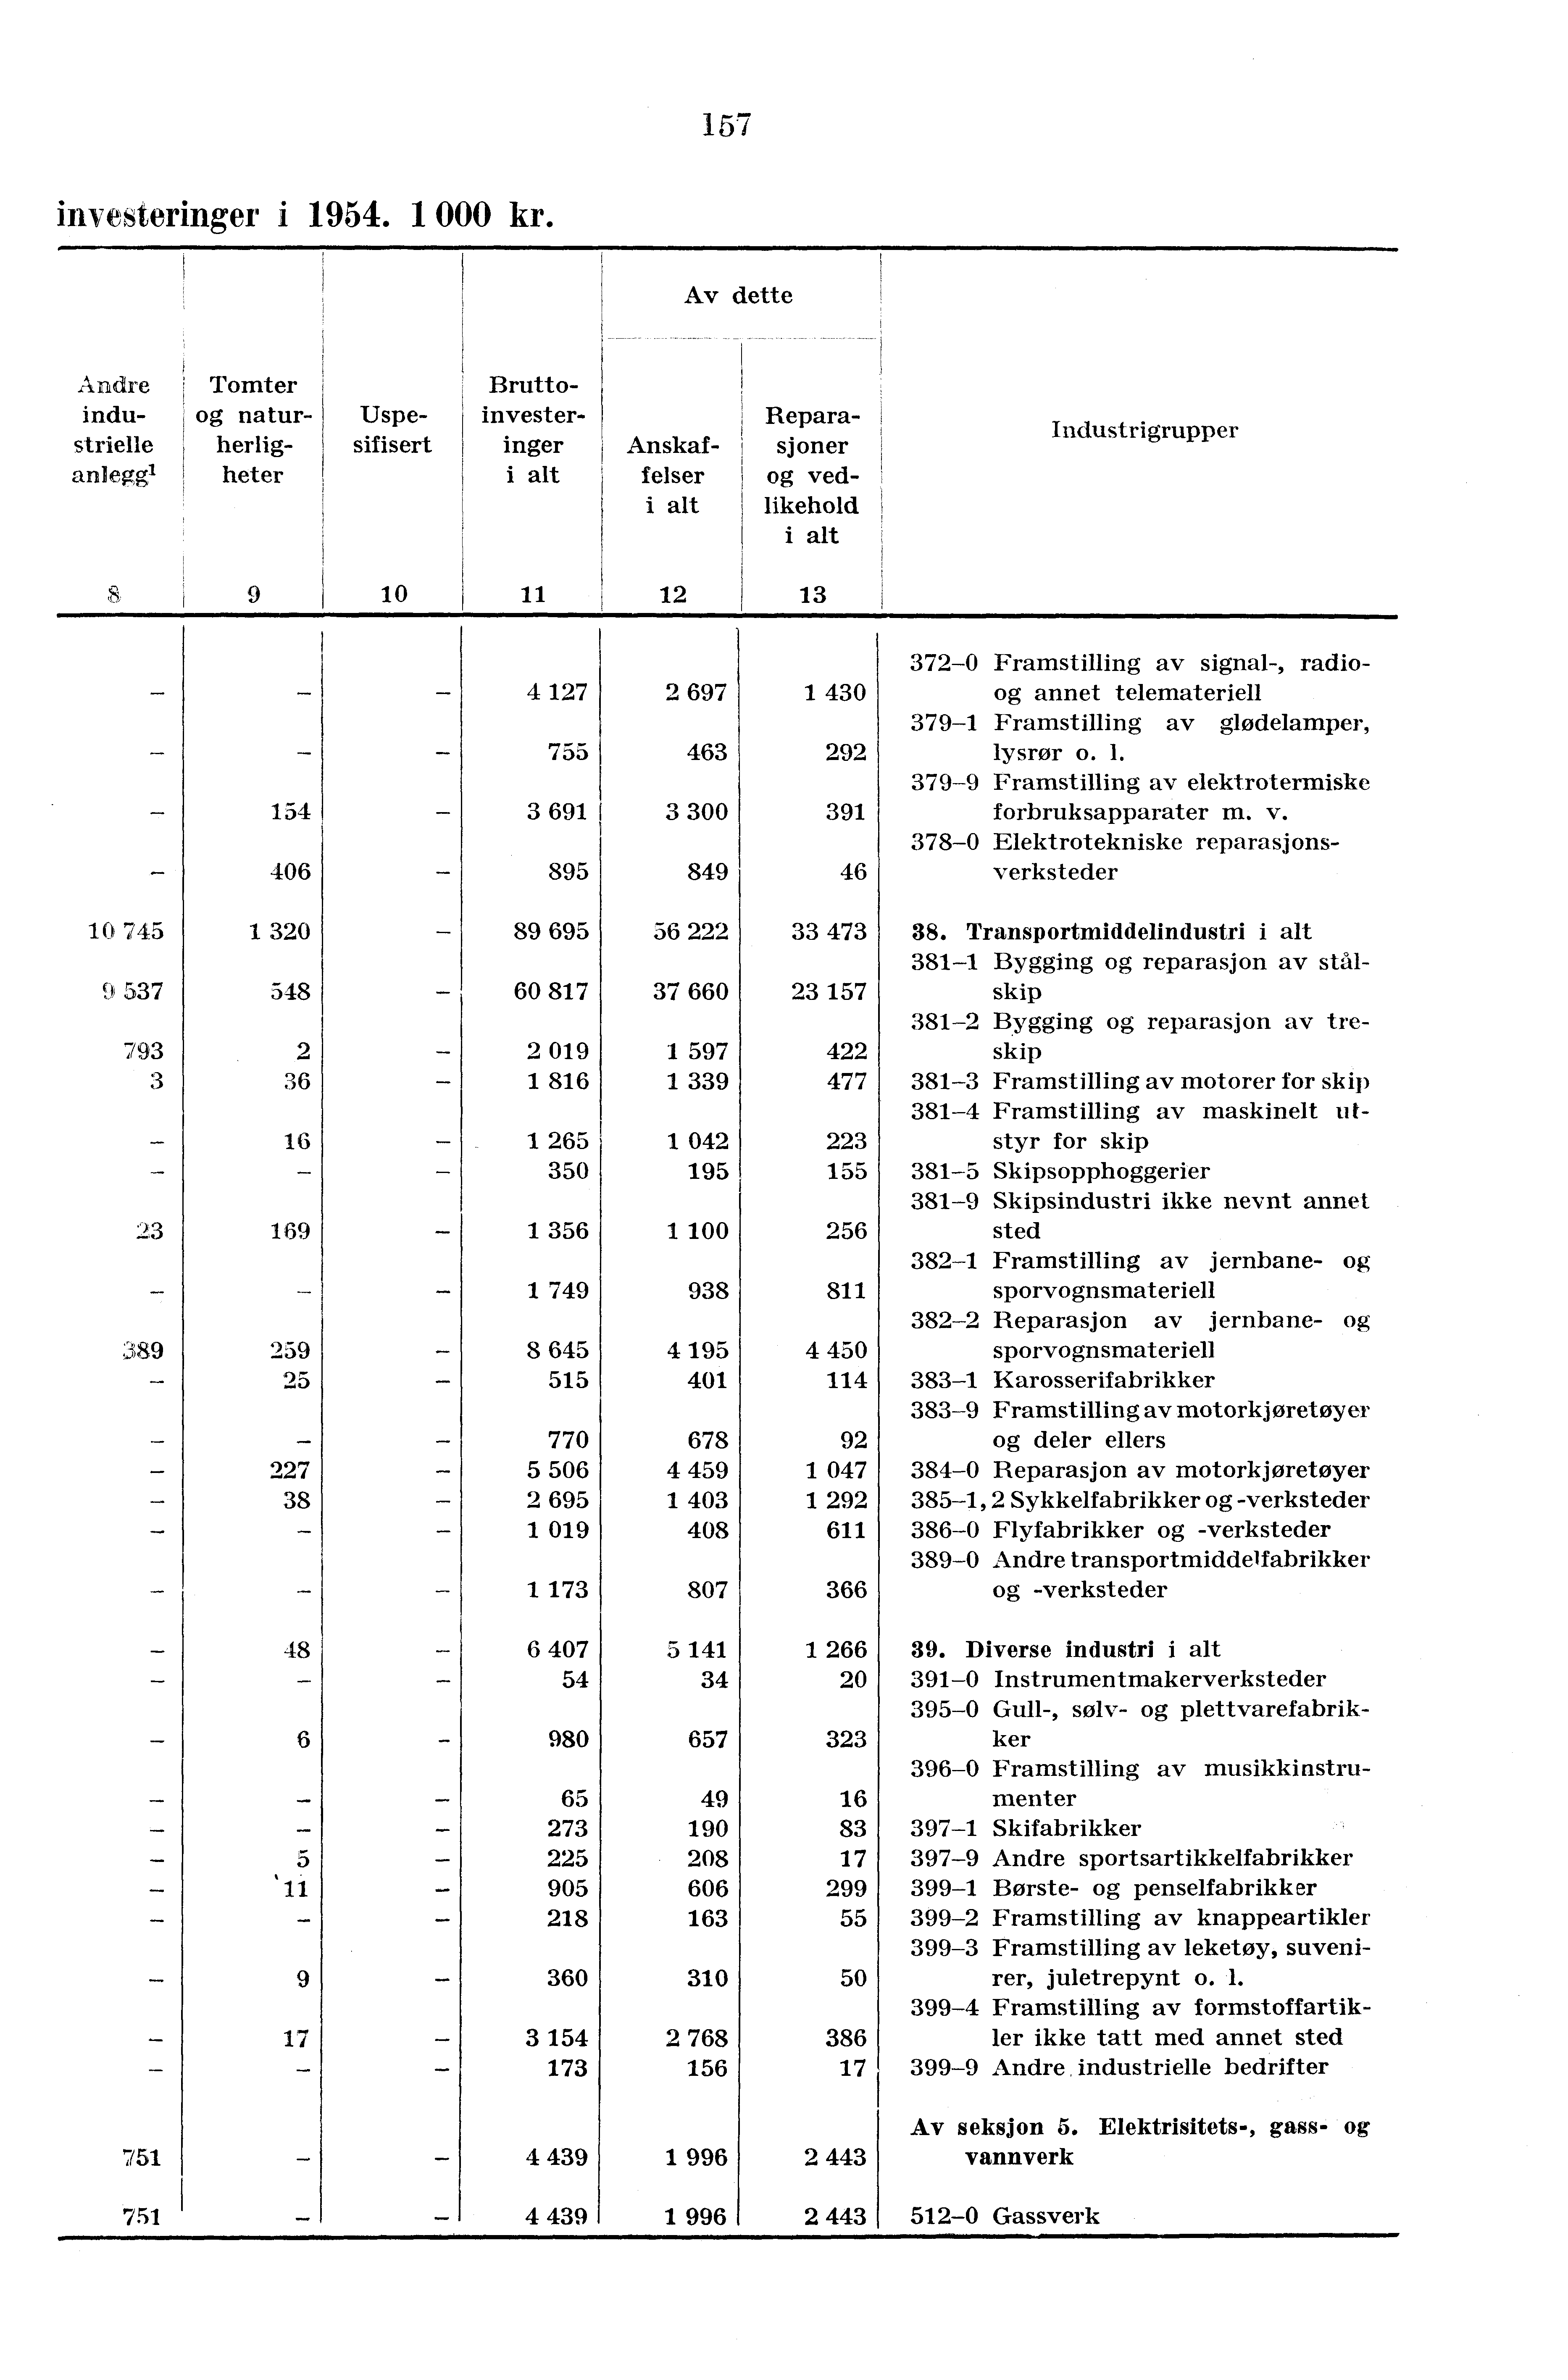 157 investeringer i 1954.